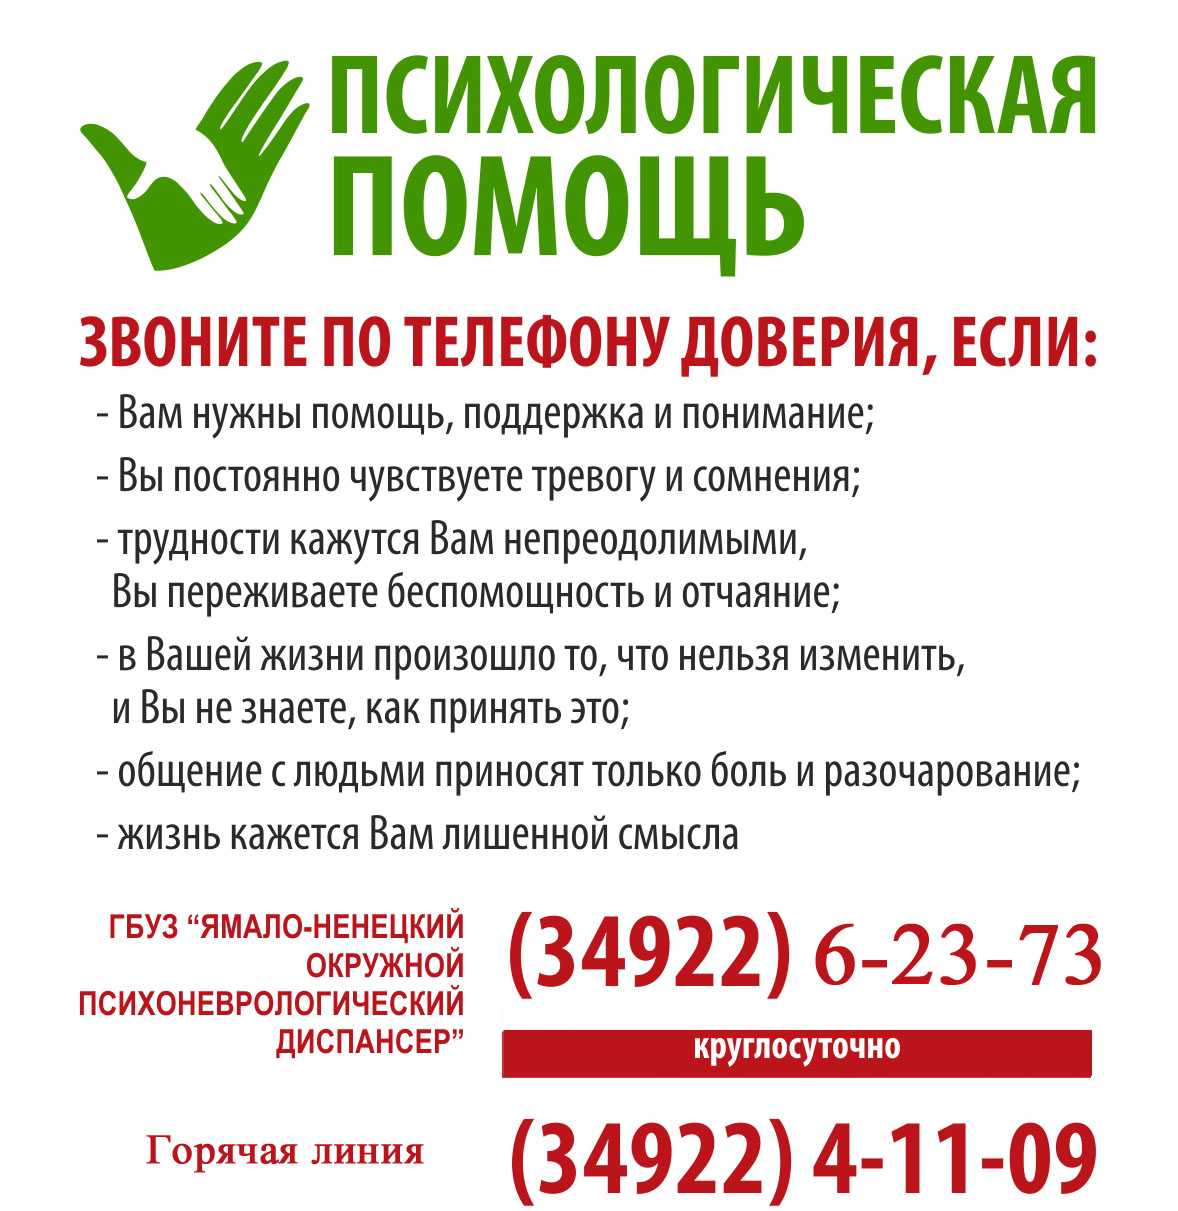 Москва помогает телефон